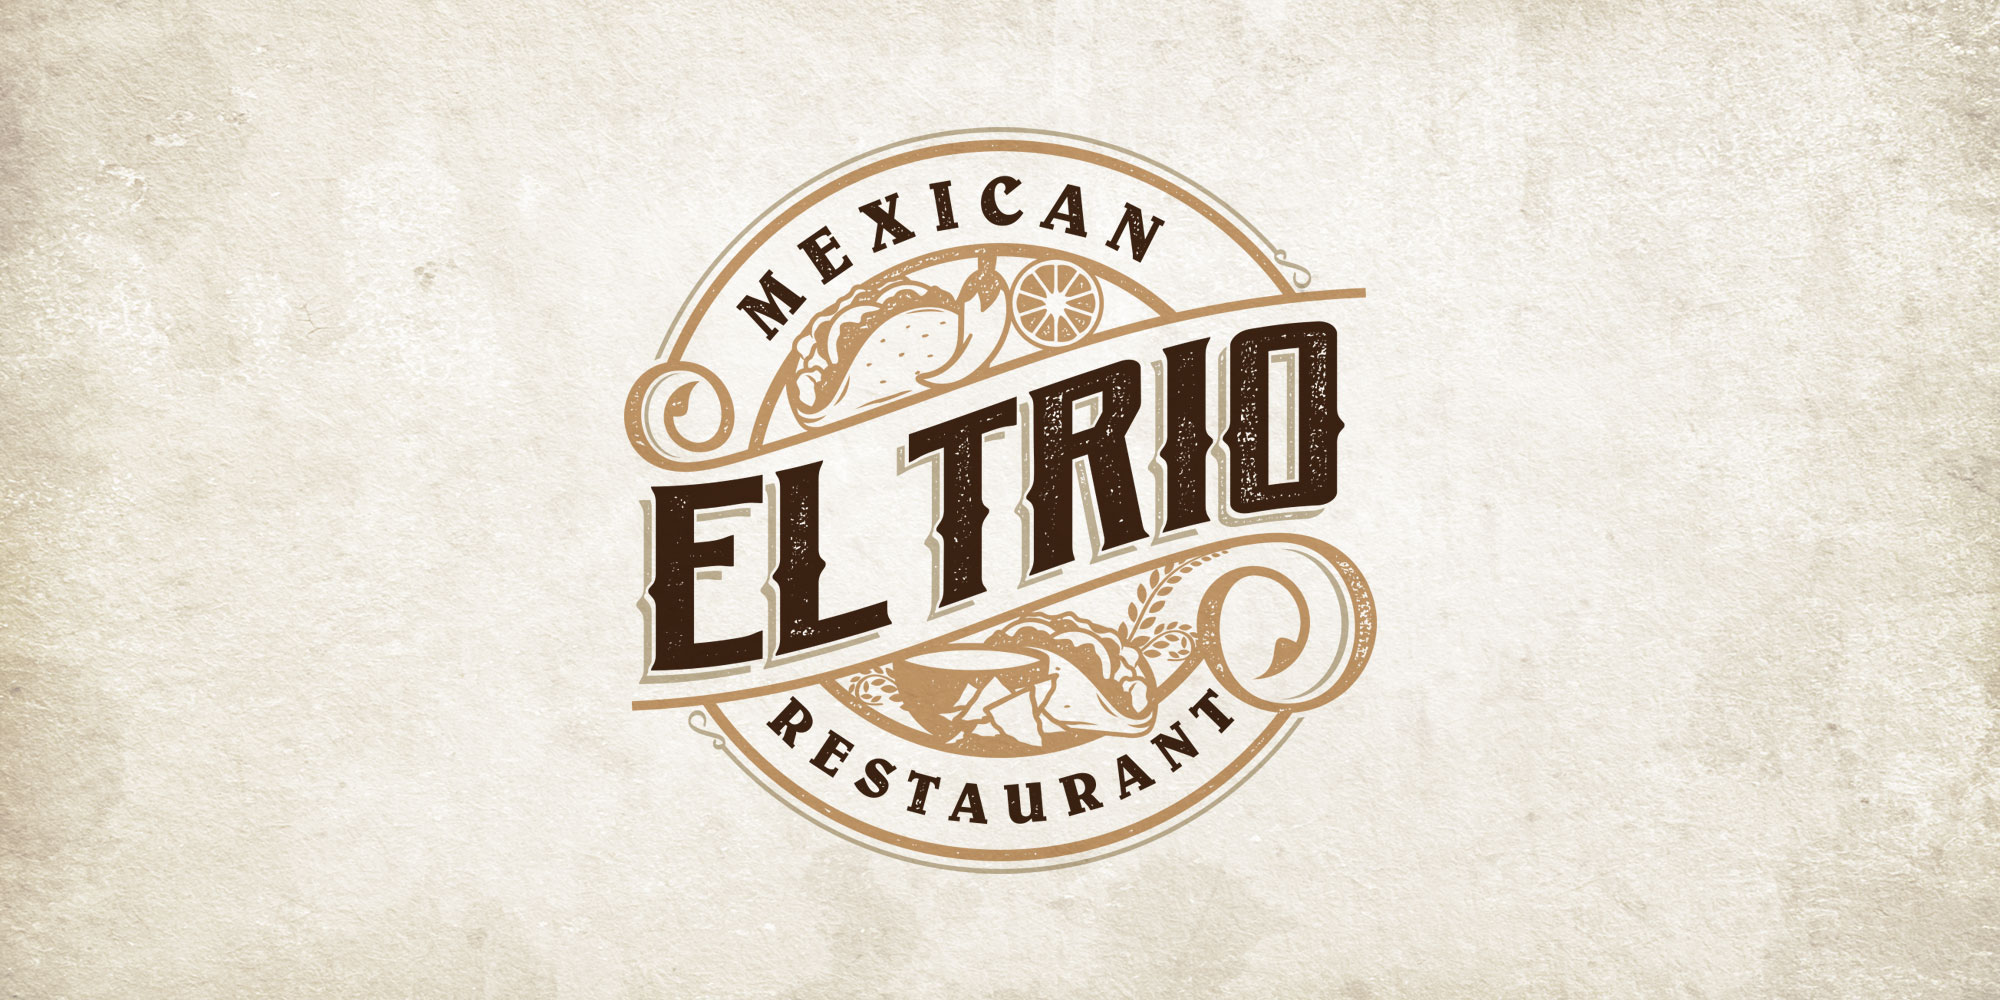 El Trio Mexican Restaurant